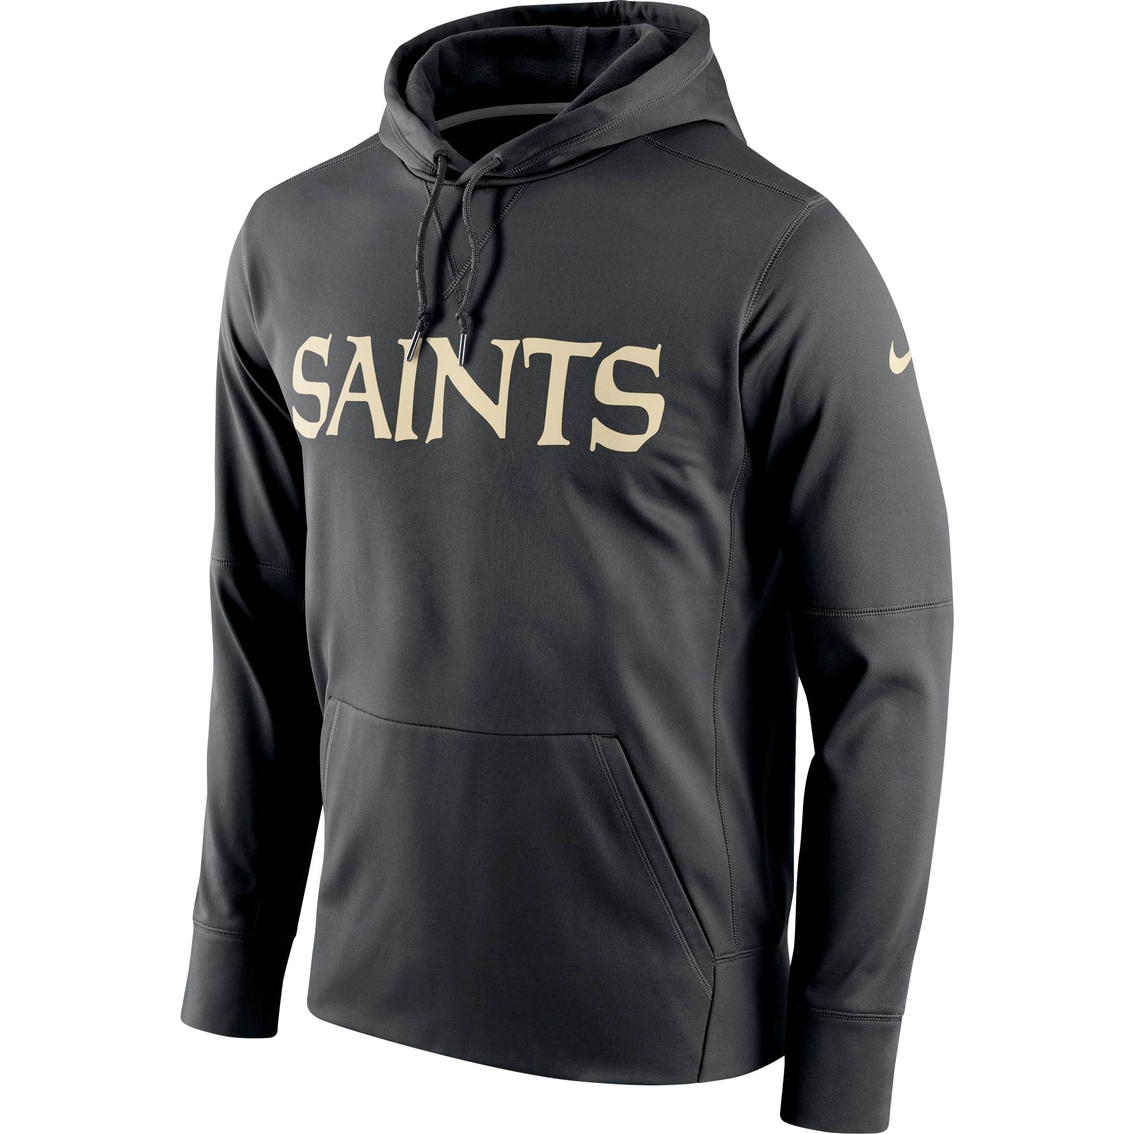 saints nike jacket